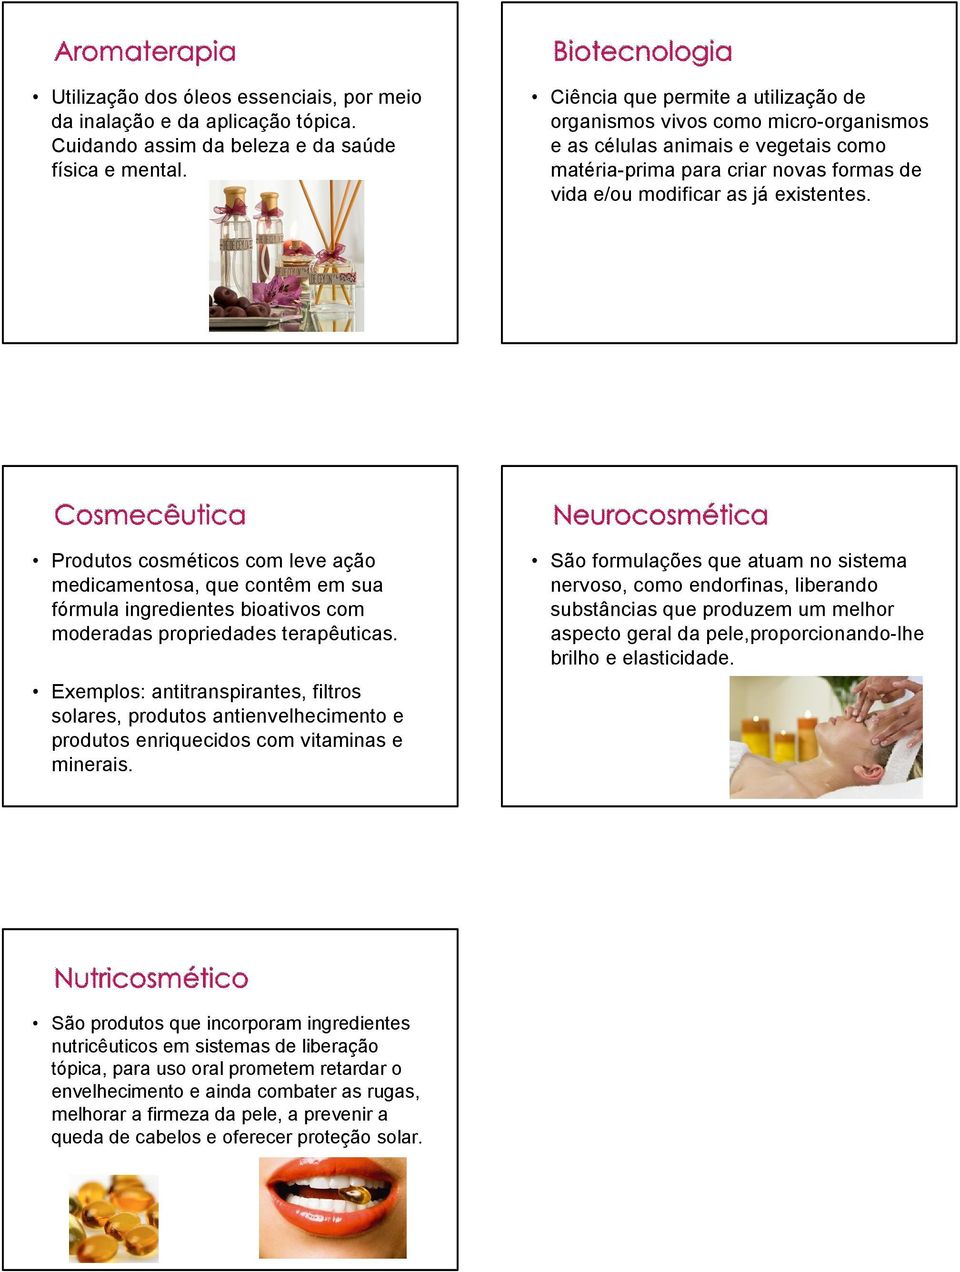 Produtos cosméticos com leve ação medicamentosa, que contêm em sua fórmula ingredientes bioativos com moderadas propriedades terapêuticas.